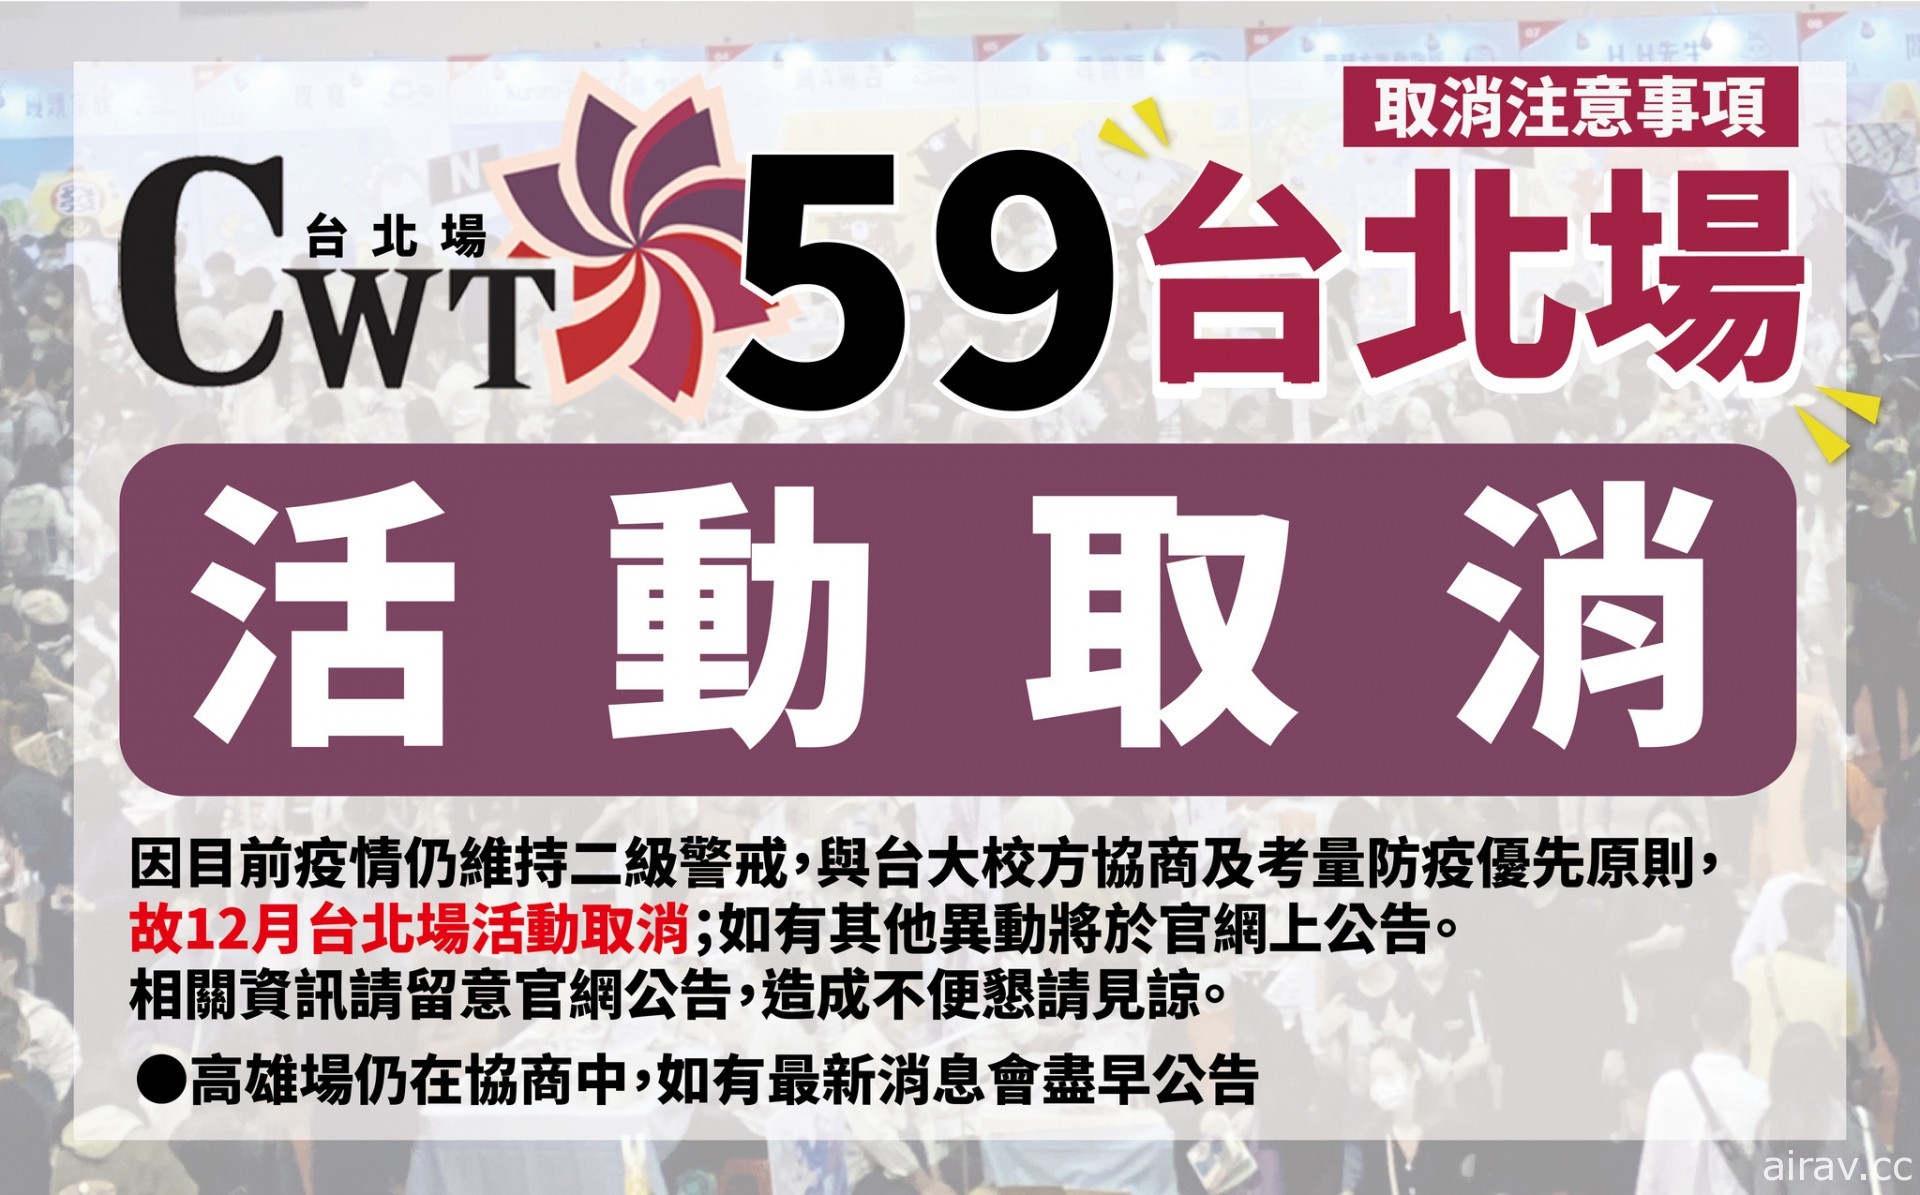 12 月 CWT59 台北同人贩售会活动宣布因疫情因素取消举办